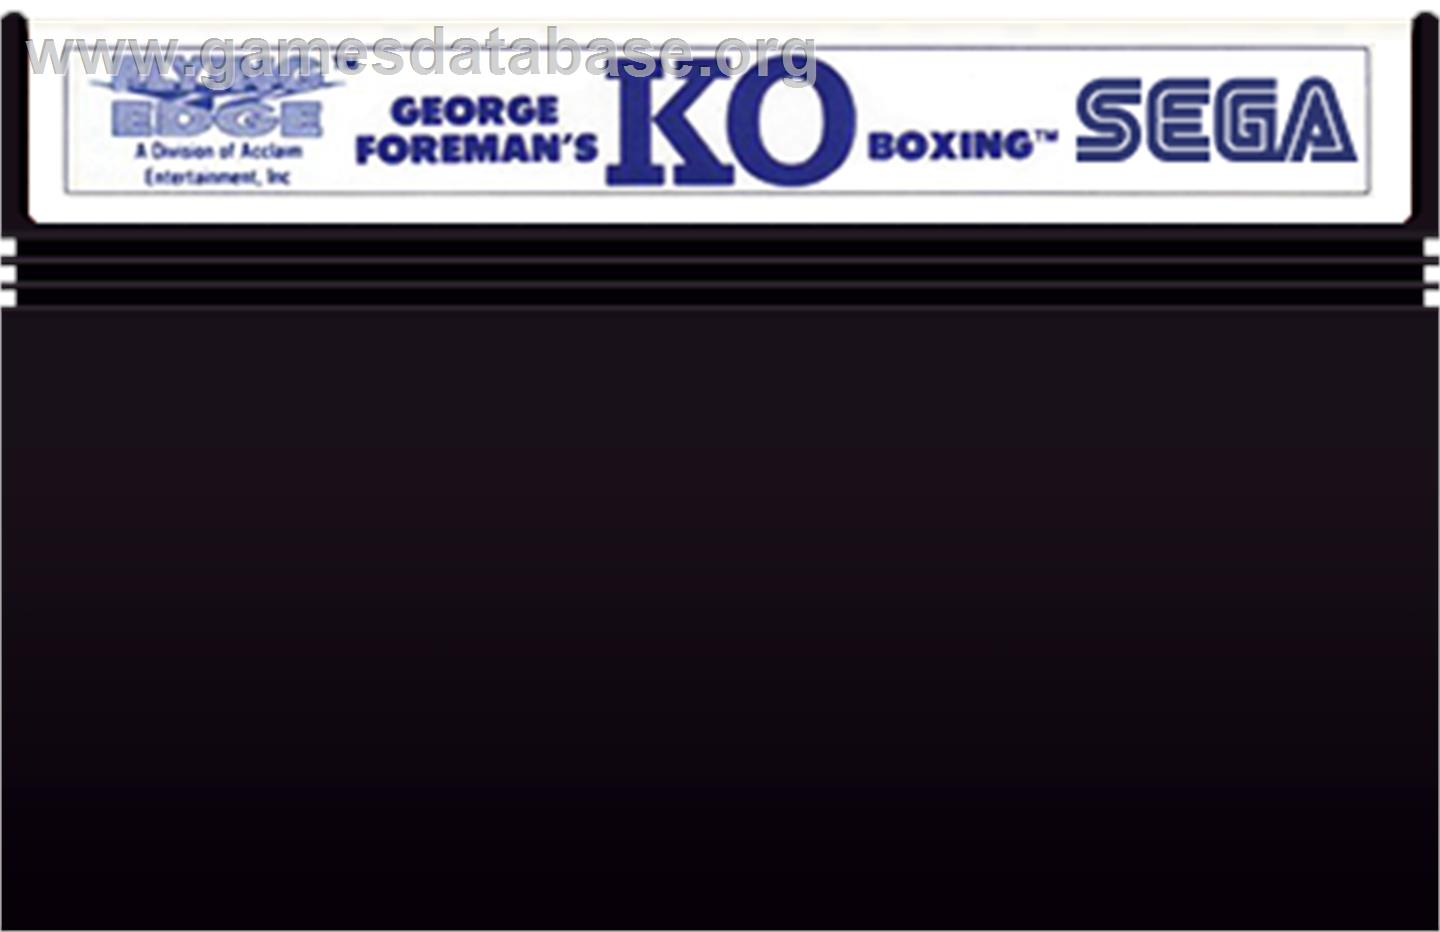 George Foreman's KO Boxing - Sega Master System - Artwork - Cartridge